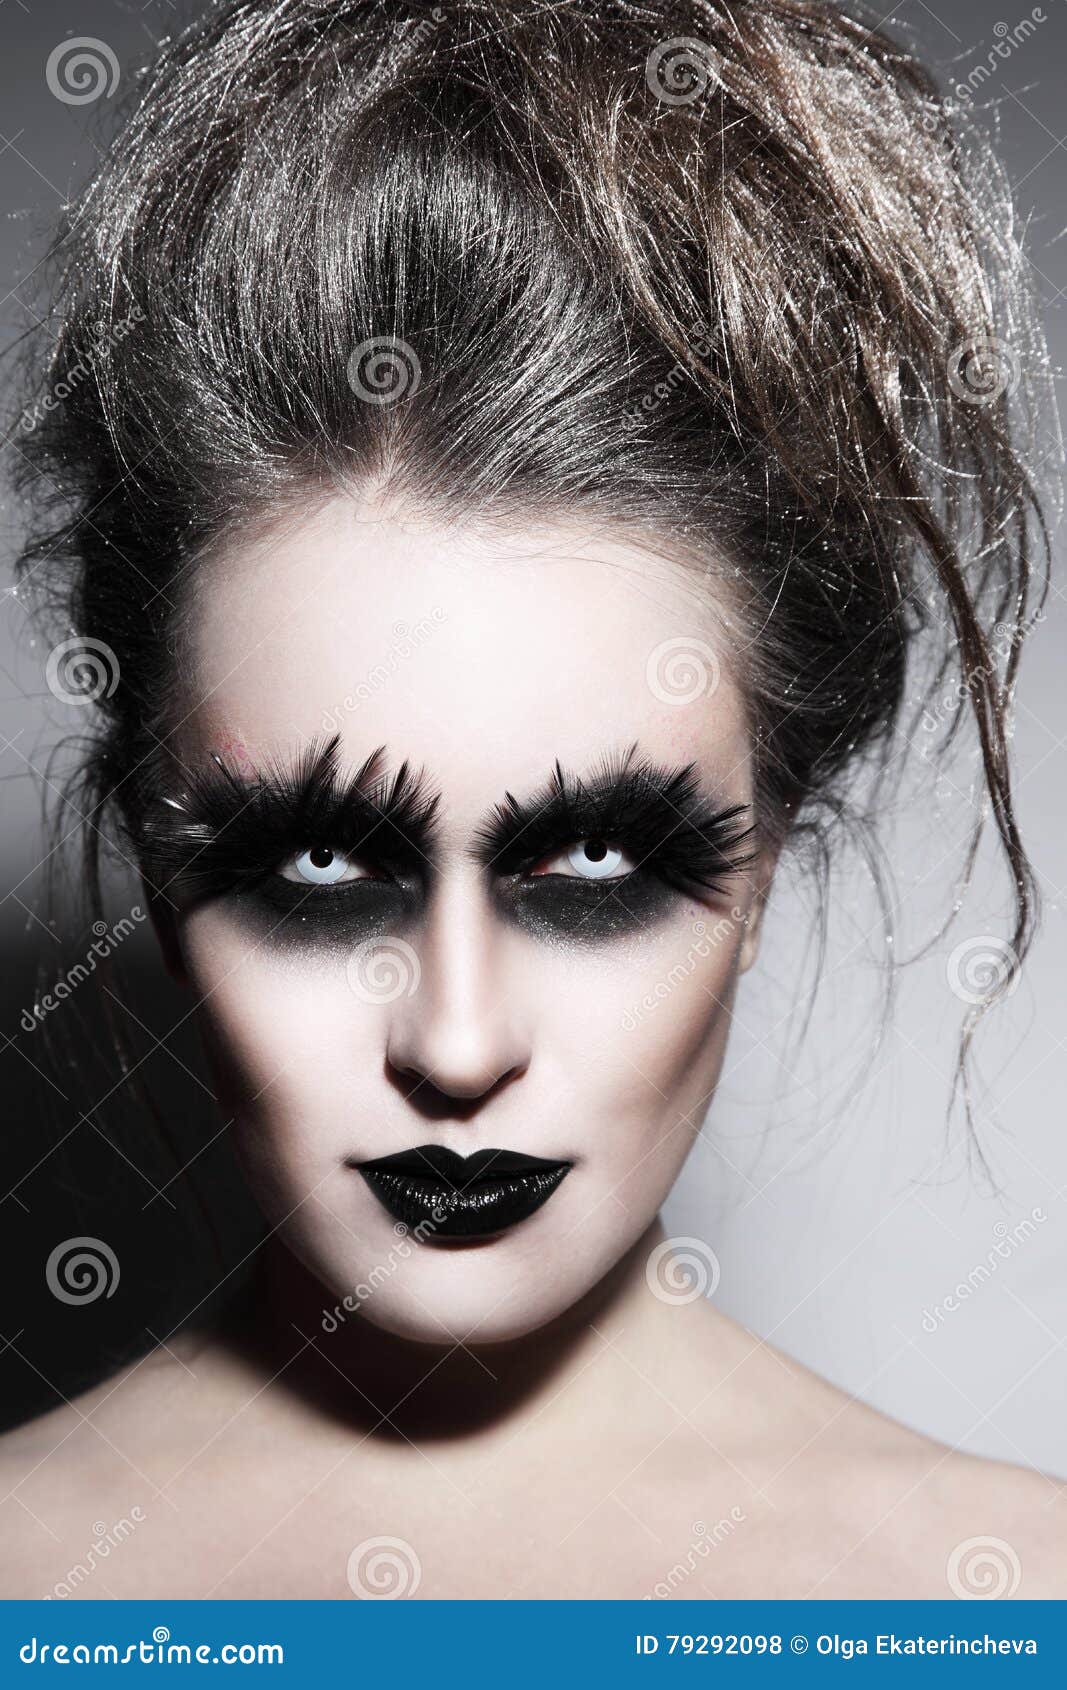 Maquillaje gótico foto de archivo. Imagen de encanto - 79292098